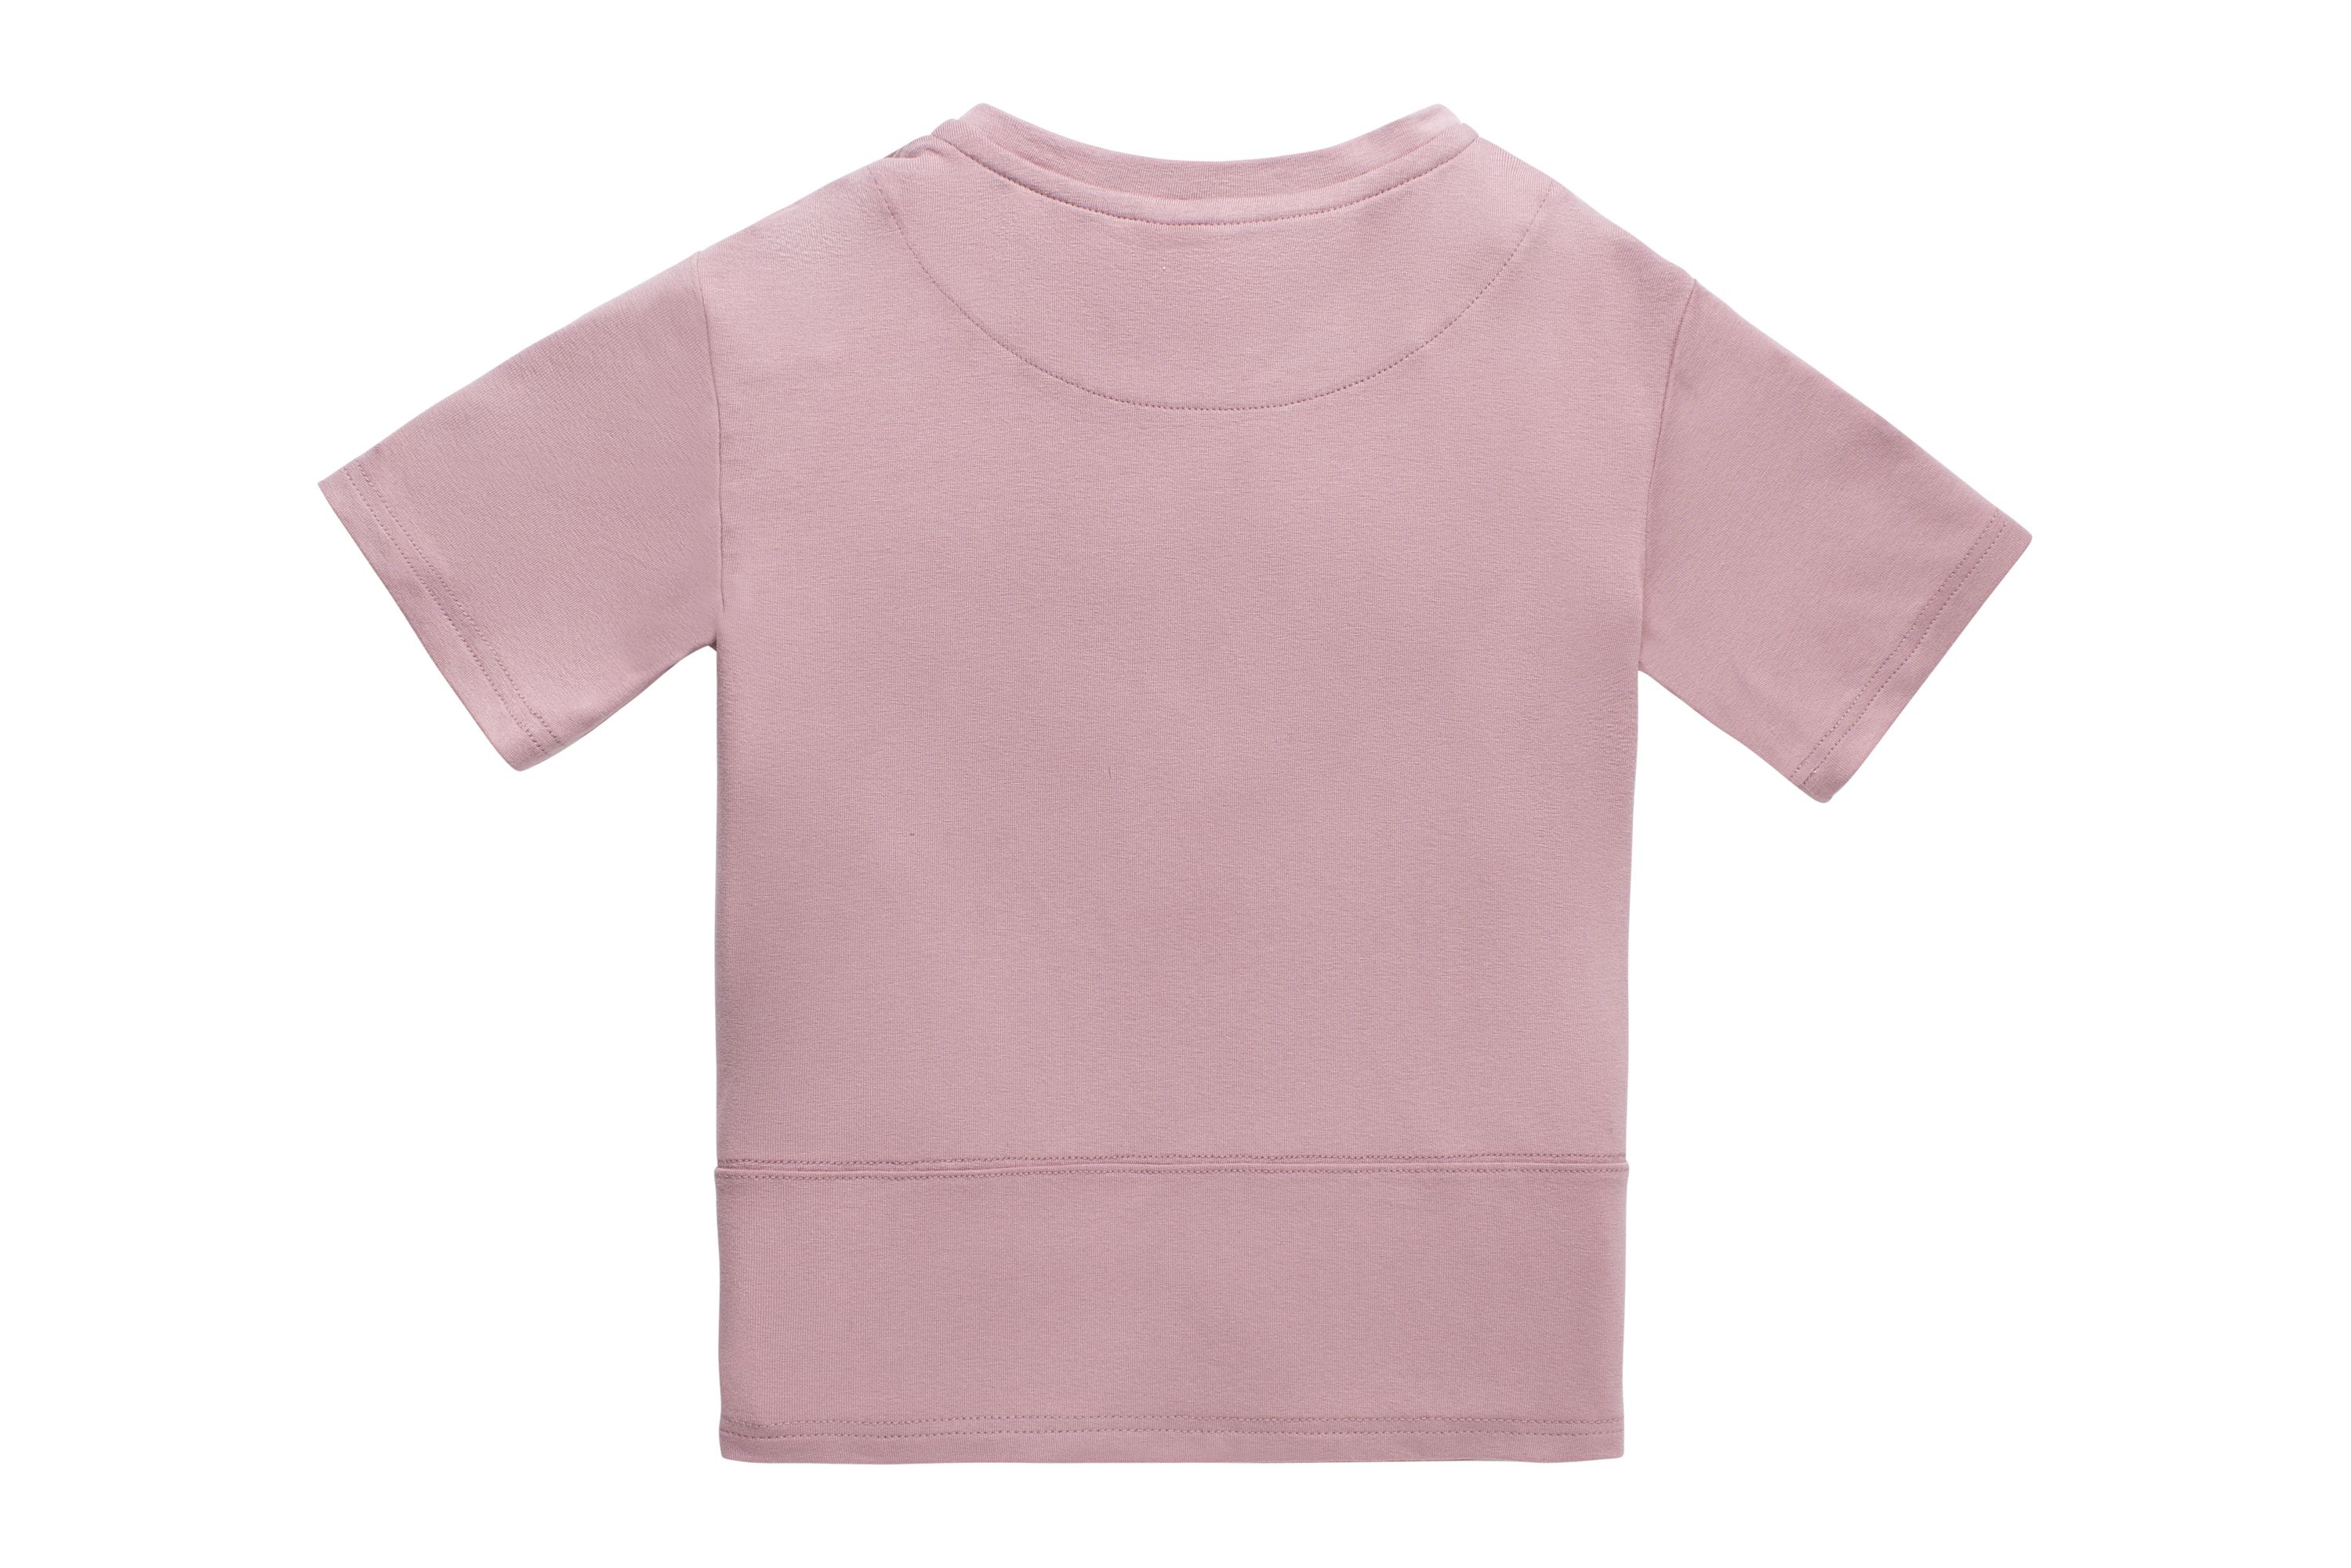 Die Rückseite des rosa Nora-Shirts